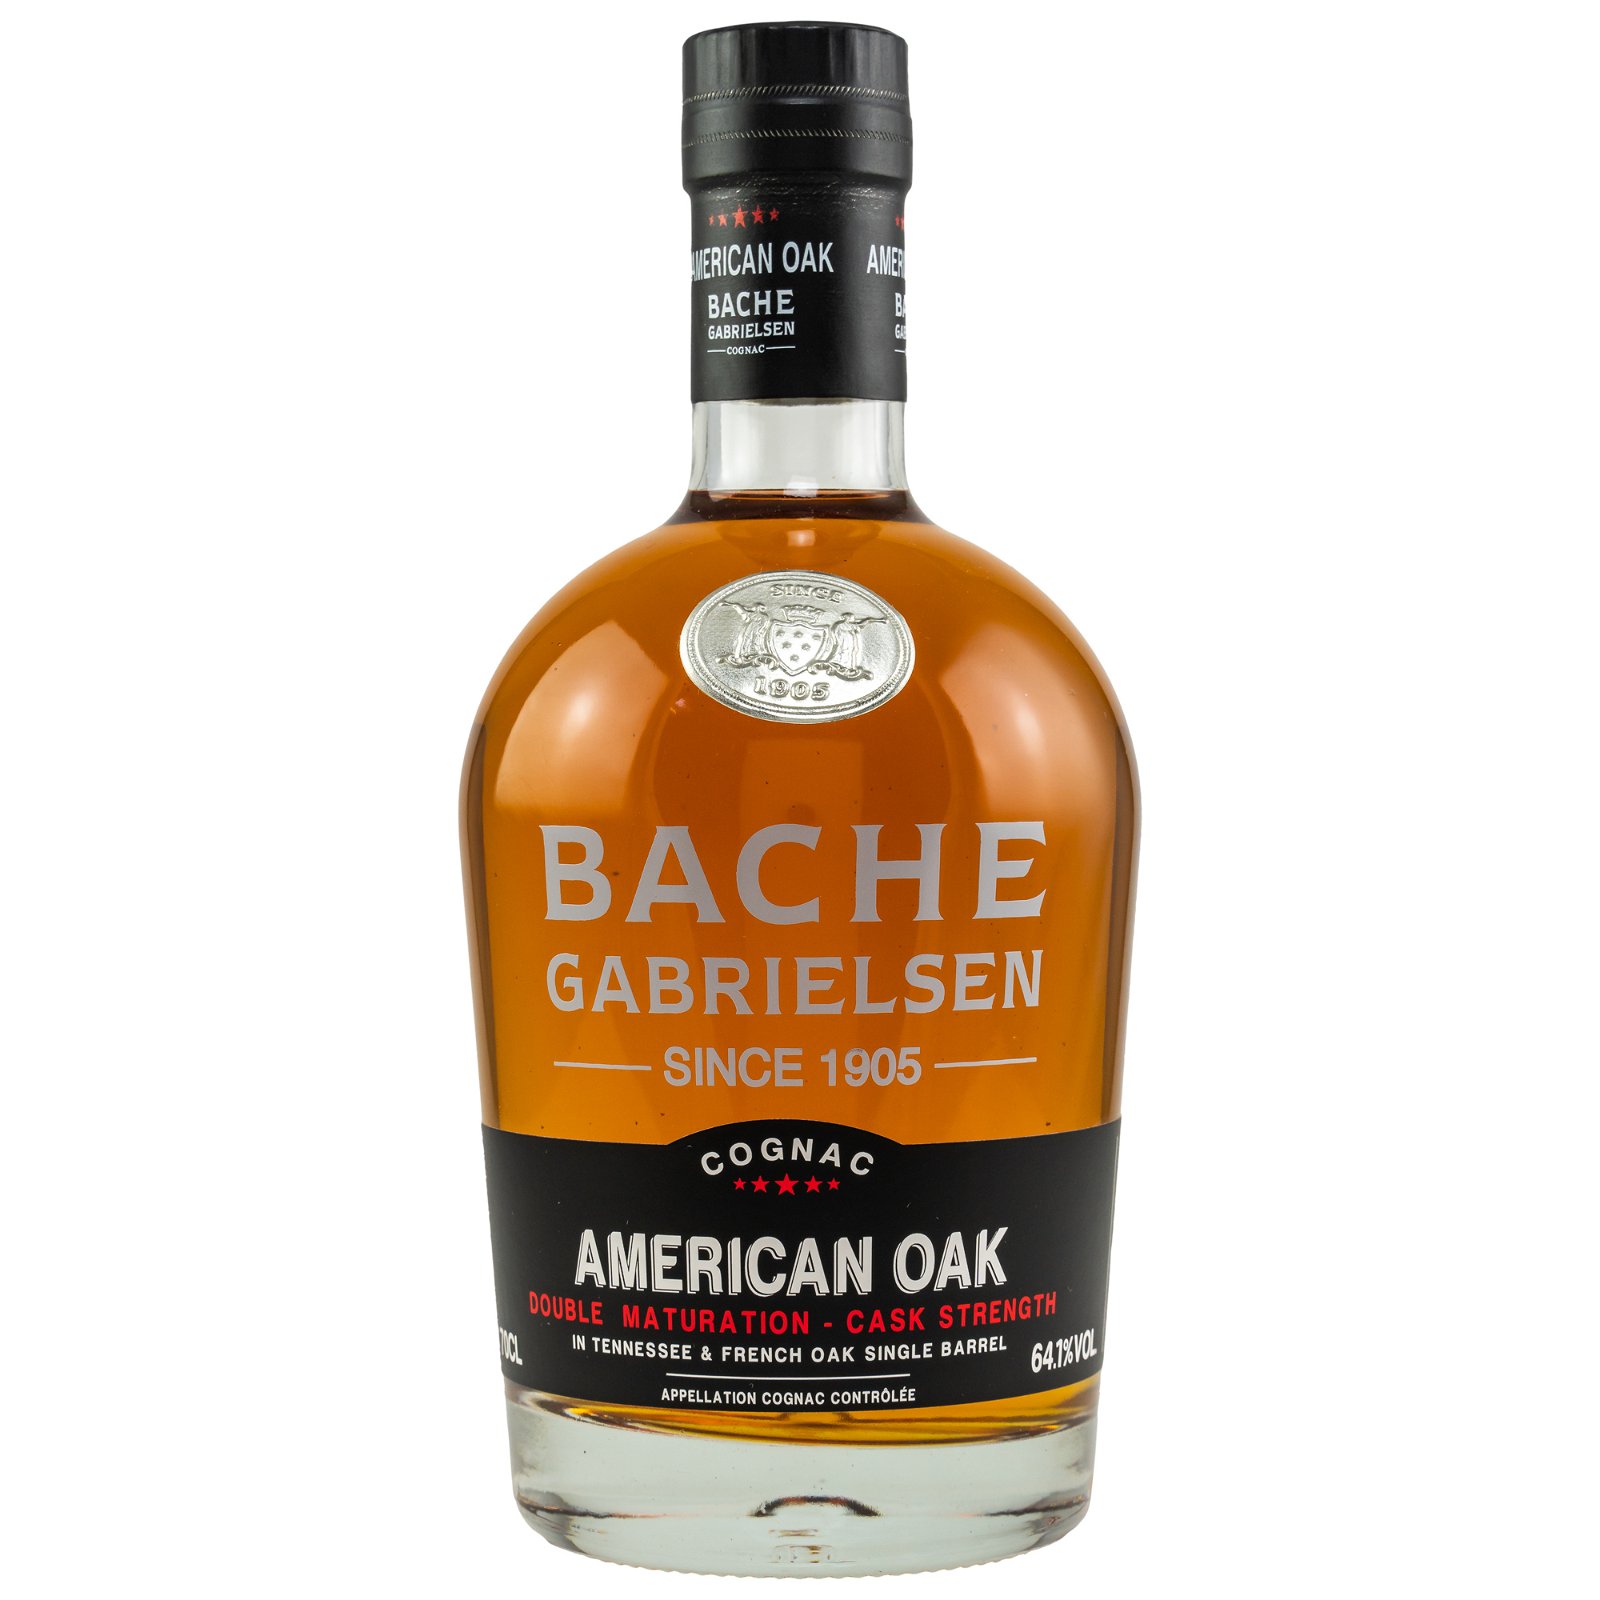 Bache-Gabrielsen American Oak Cask Strength Single Barrel Cognac